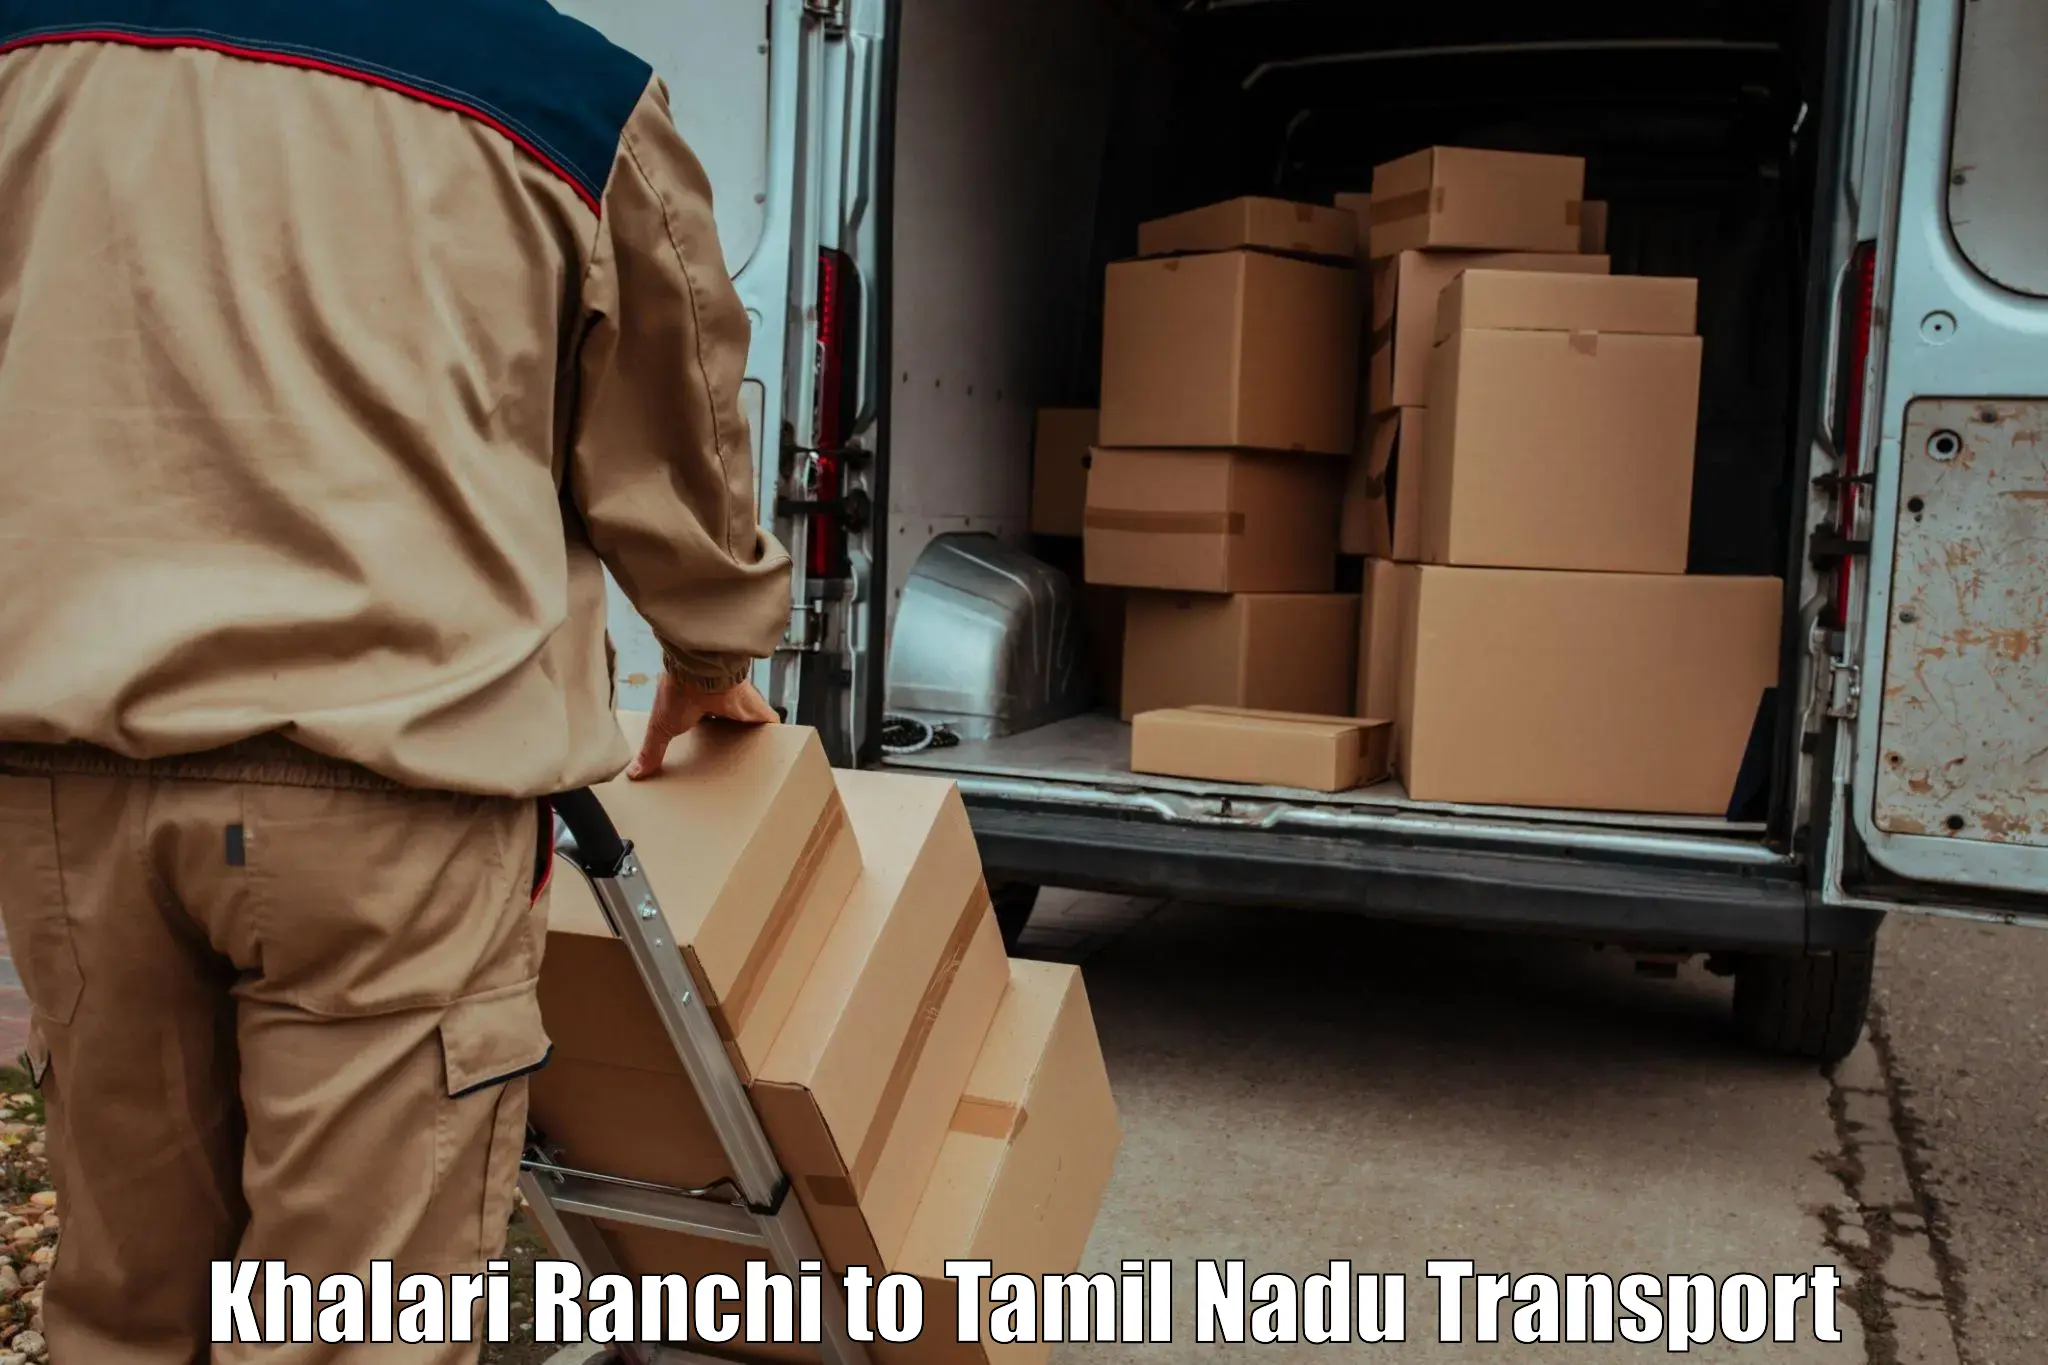 Cargo transport services Khalari Ranchi to Kumbakonam